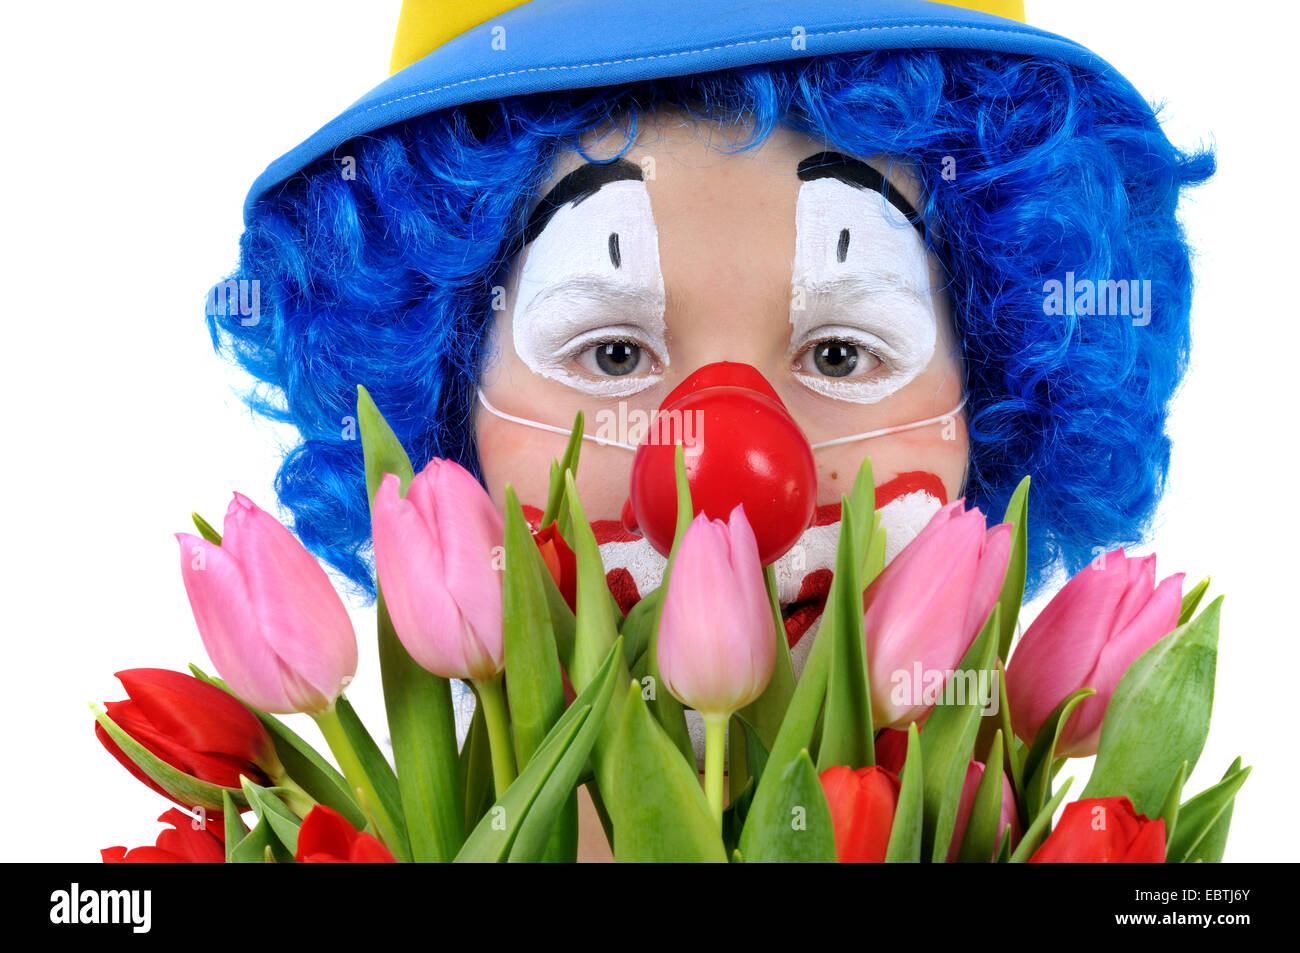 Little Boy vestito come clown tenendo un mazzo di fiori Foto Stock